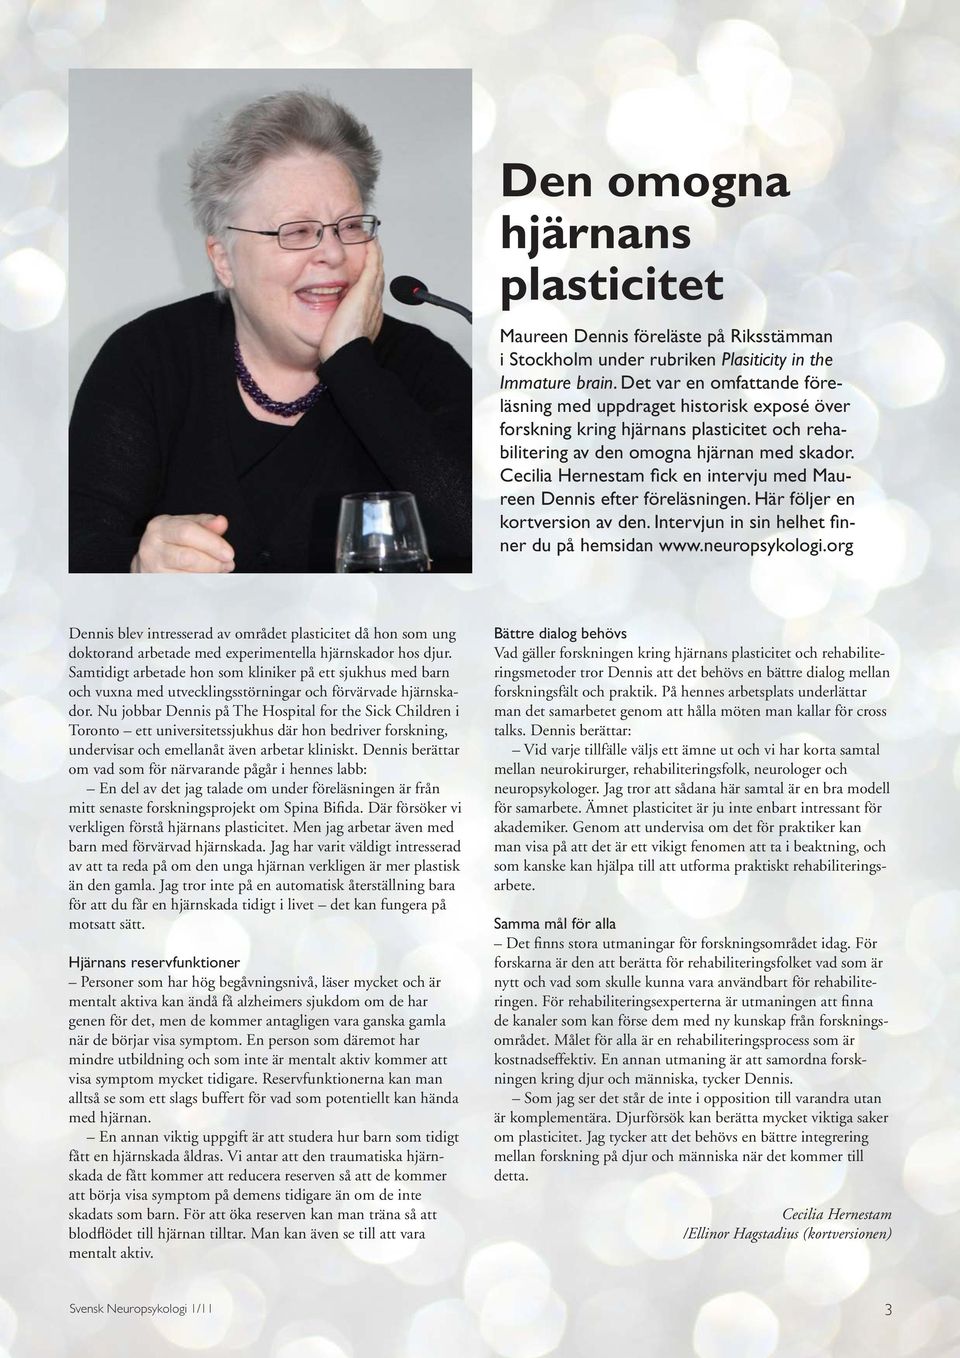 Cecilia Hernestam fick en intervju med Maureen Dennis efter föreläsningen. Här följer en kortversion av den. Intervjun in sin helhet finner du på hemsidan www.neuropsykologi.